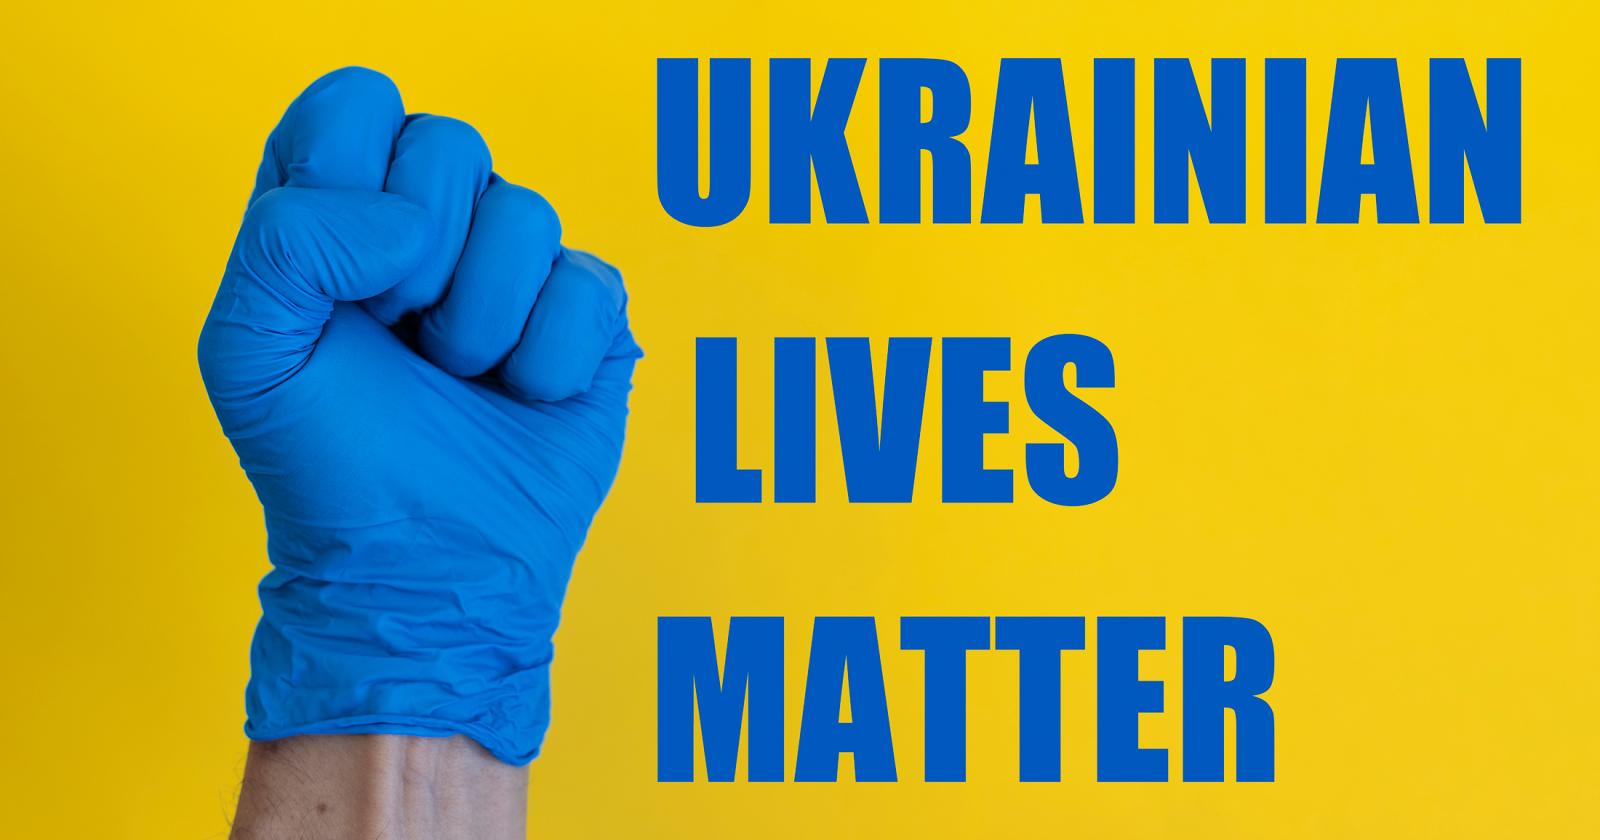 UKRAINIAN LIVES MATTER